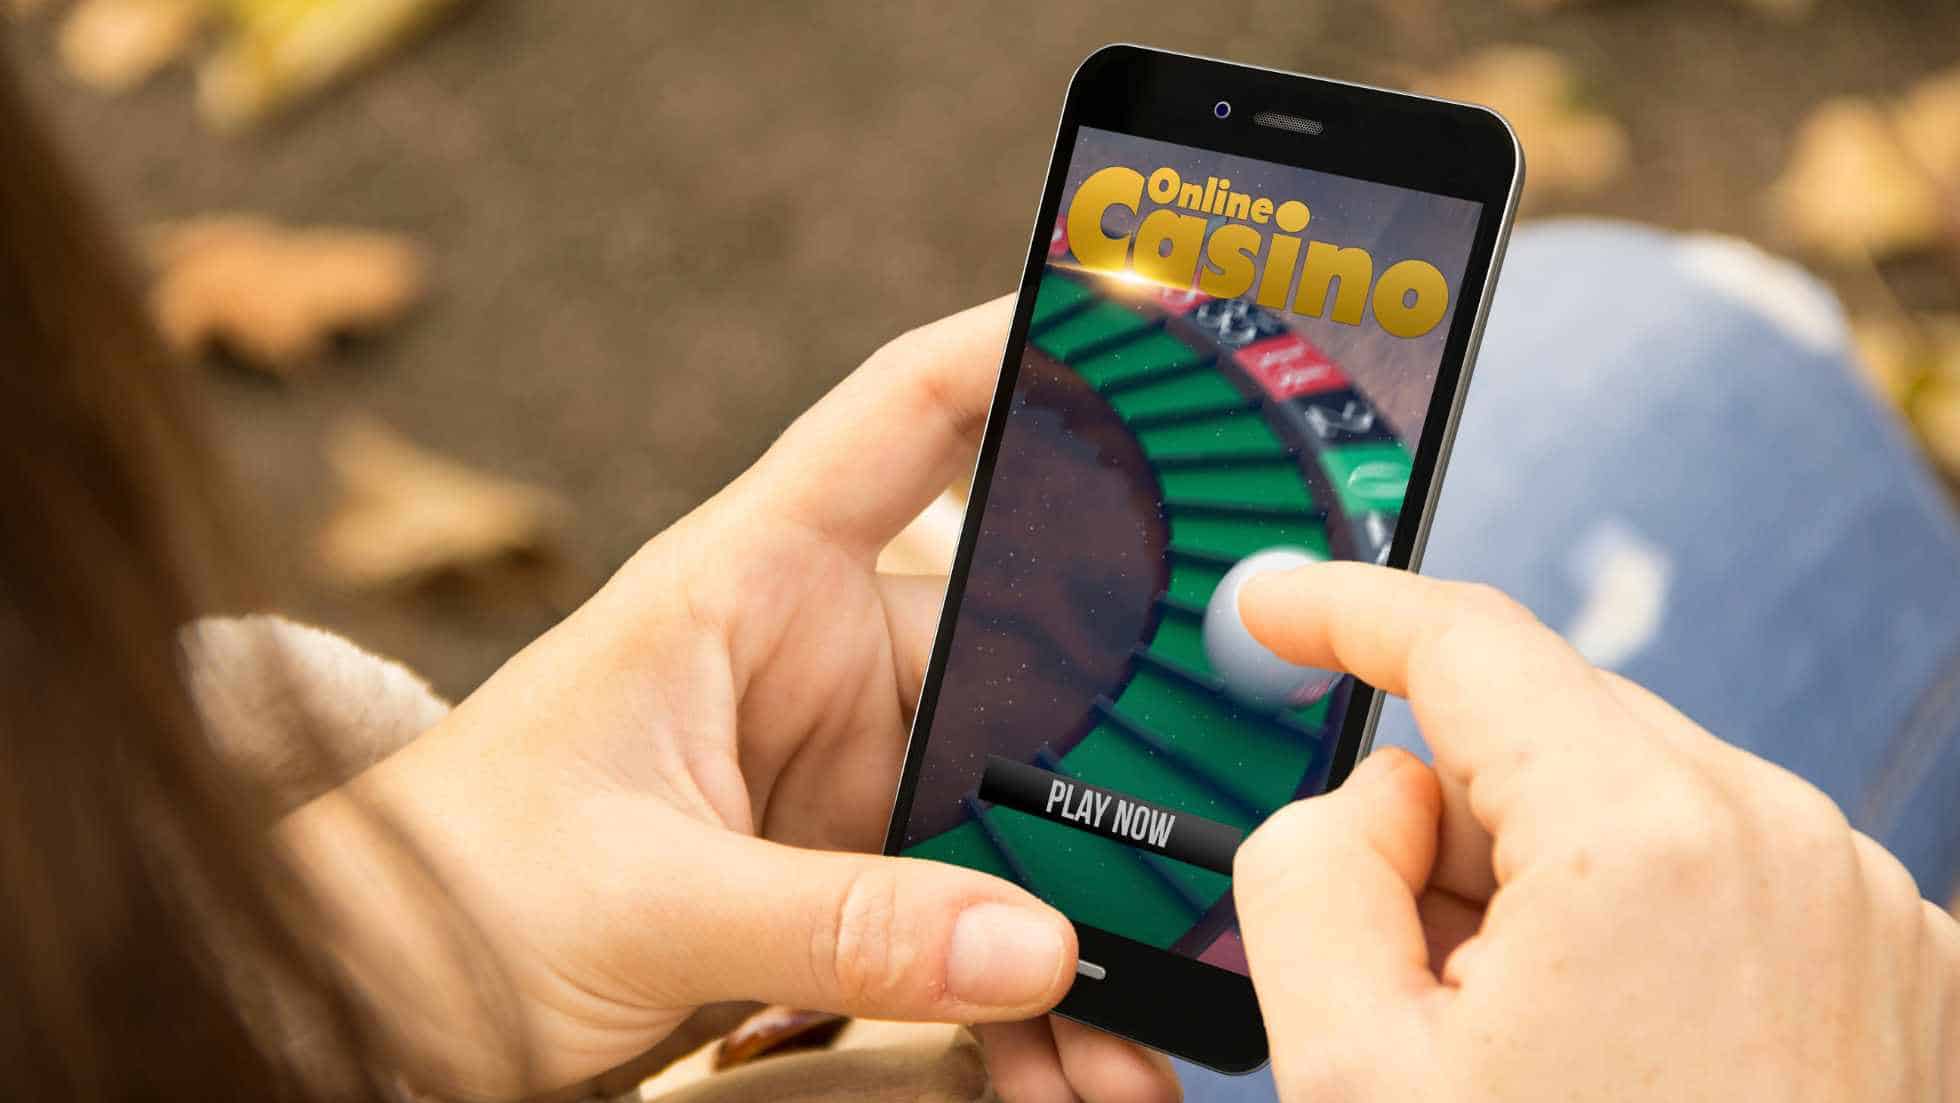 online casino gabling cnv